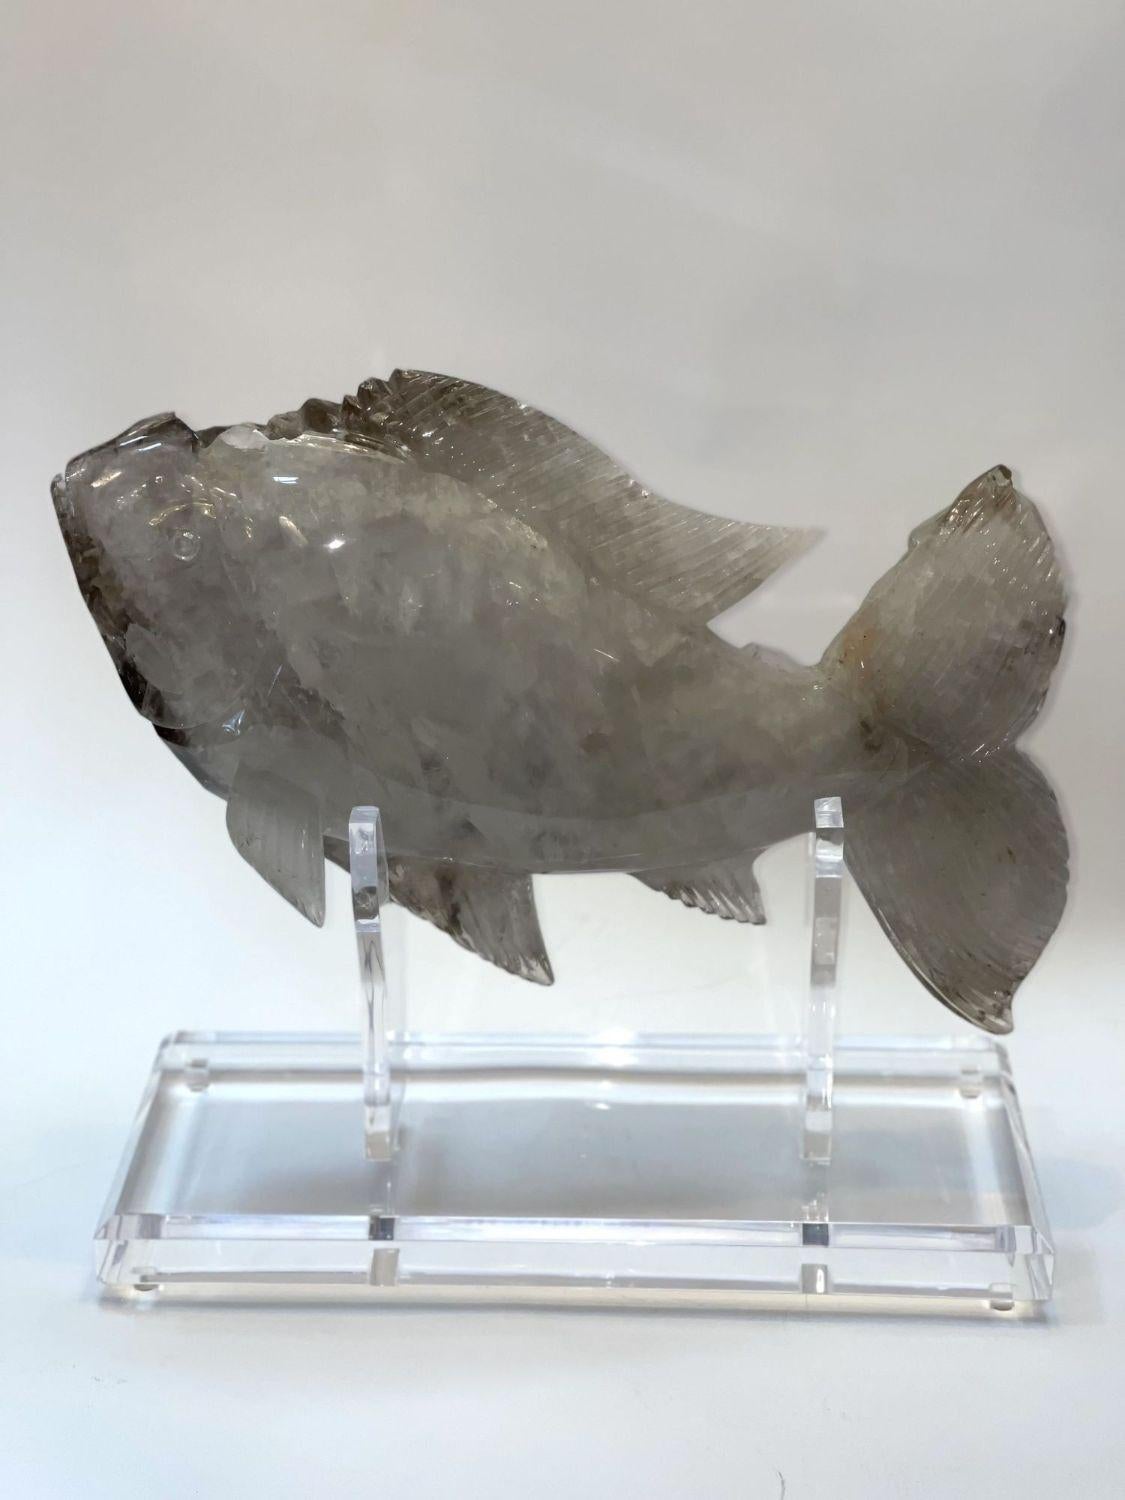 Fischskulptur aus Bergkristall auf Acrylsockel. Hergestellt in Brasilien (ca. 1980er Jahre)
 
Abmessungen:
 
Skulptur mit Sockel: 16